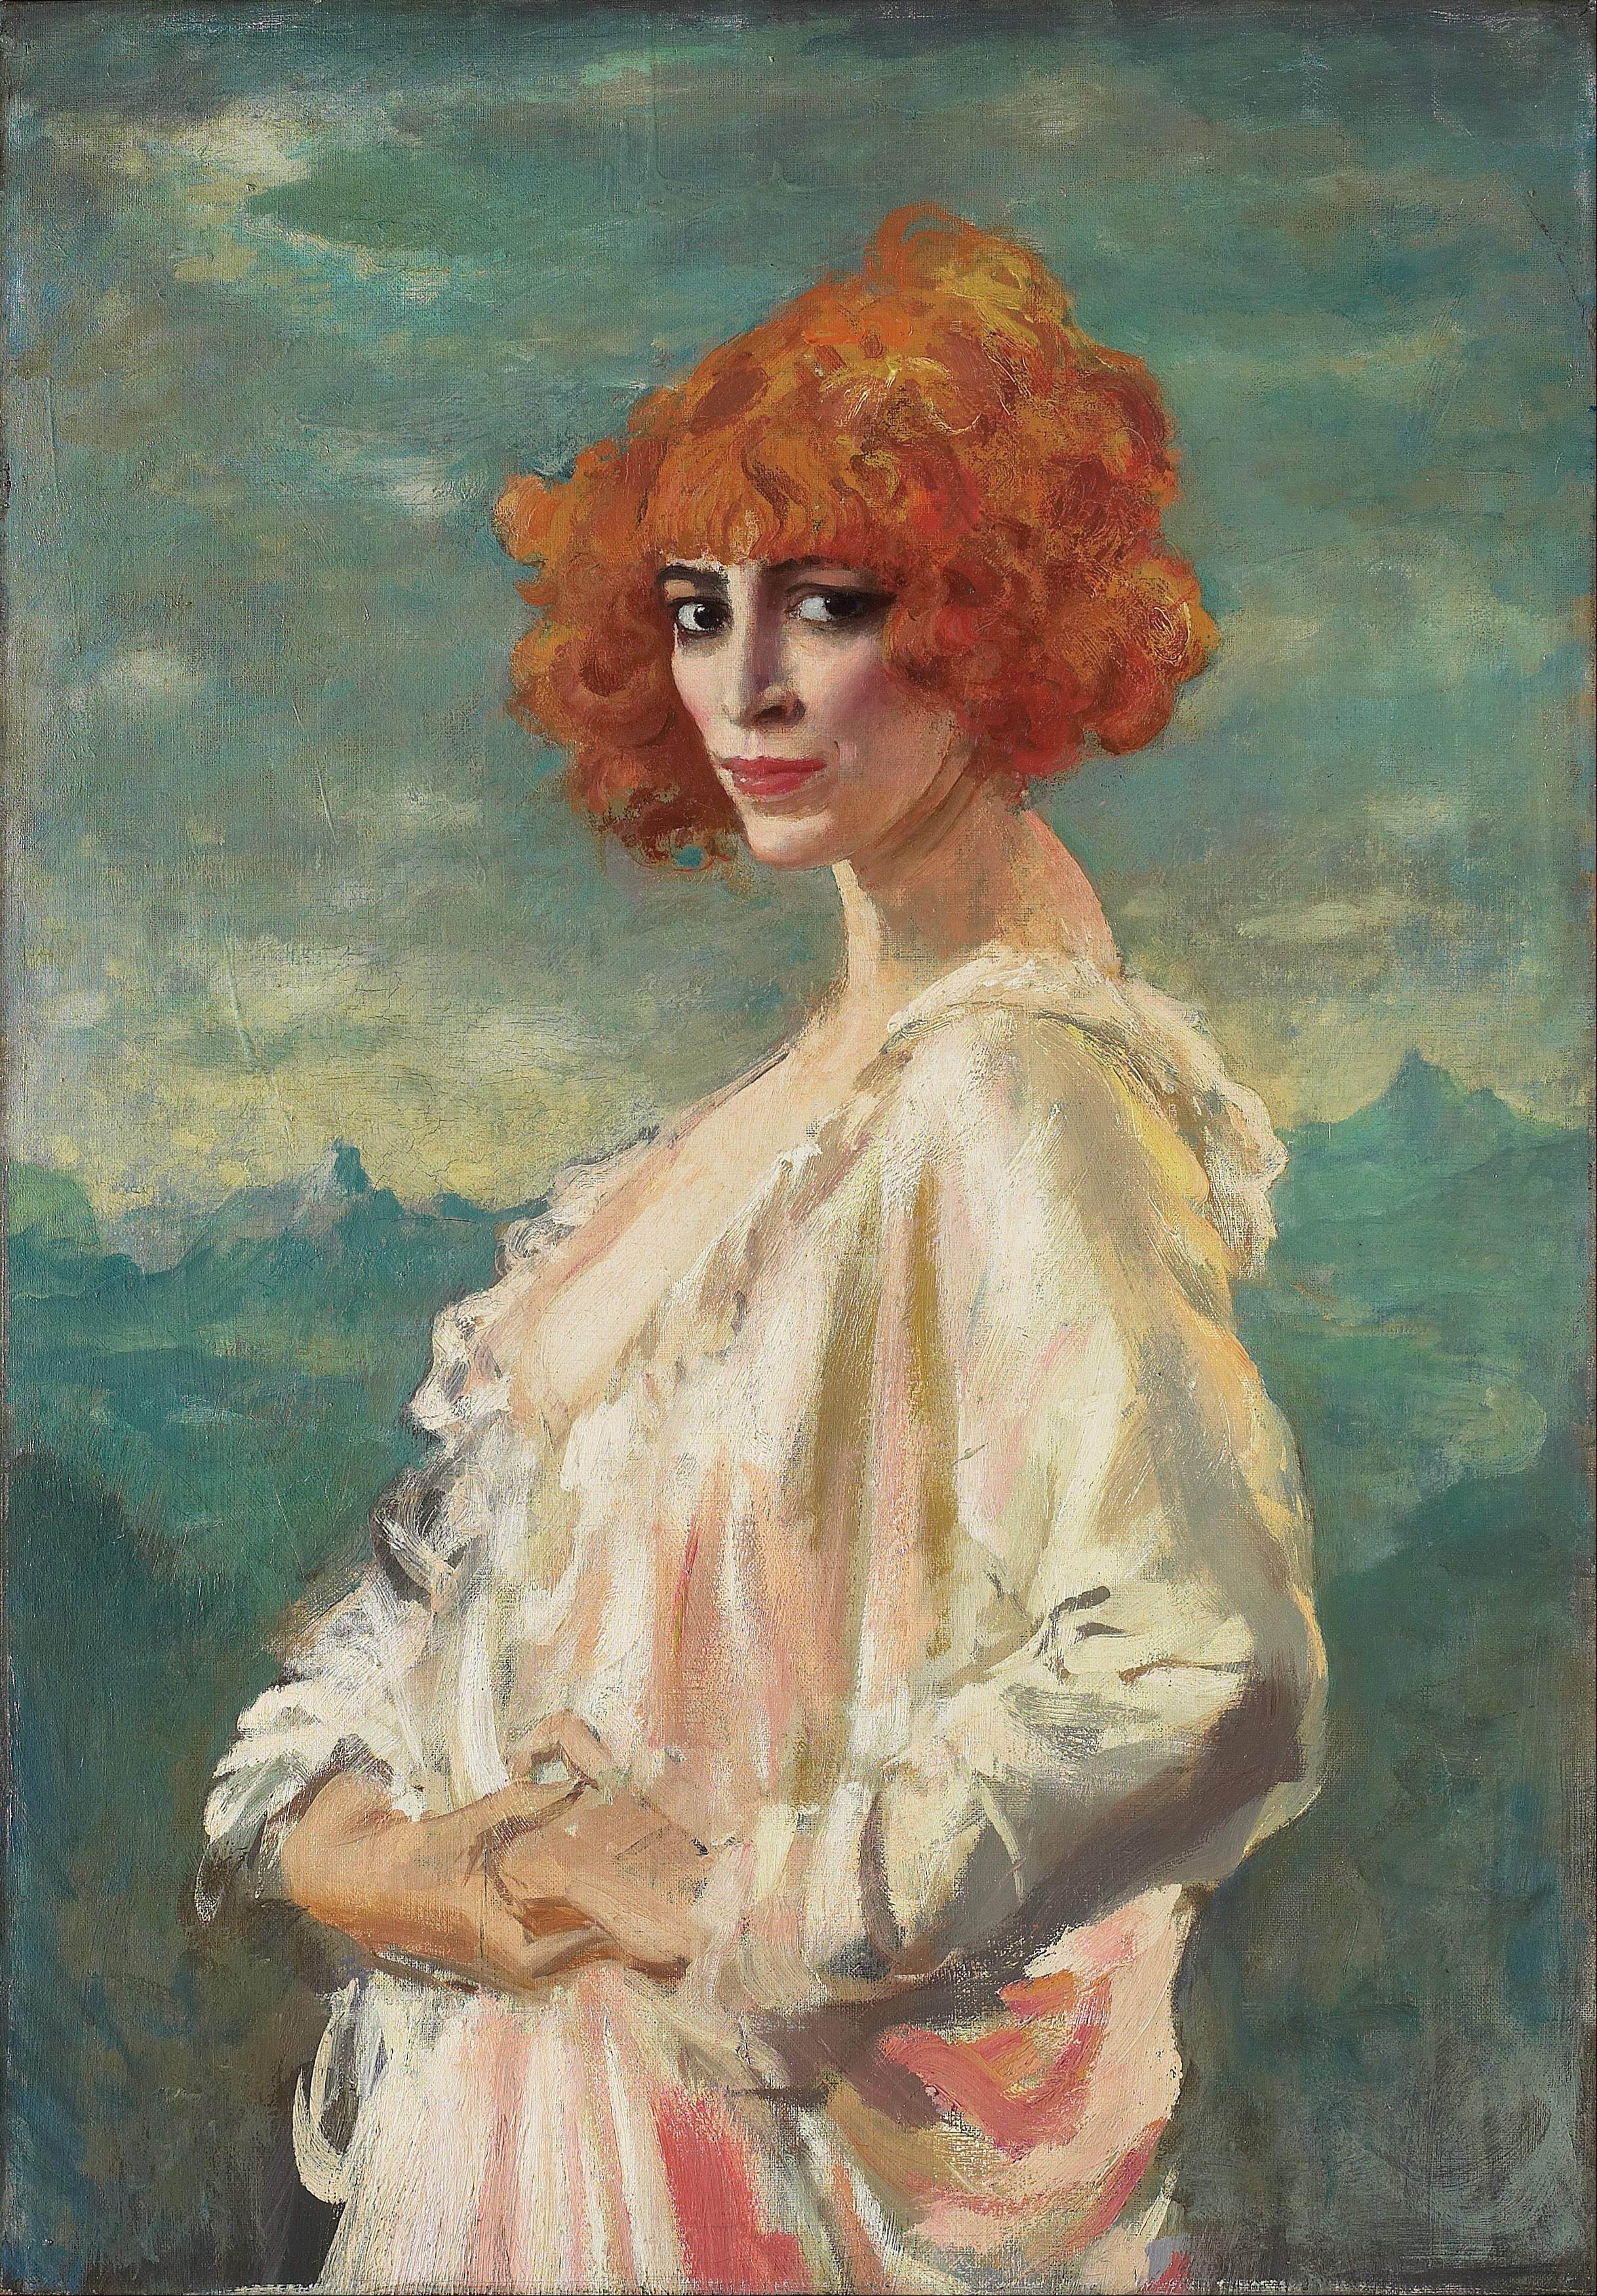 卡薩蒂侯爵夫人 by Augustus Edwin John - 1919 - 68.6 x 96.5 cm 